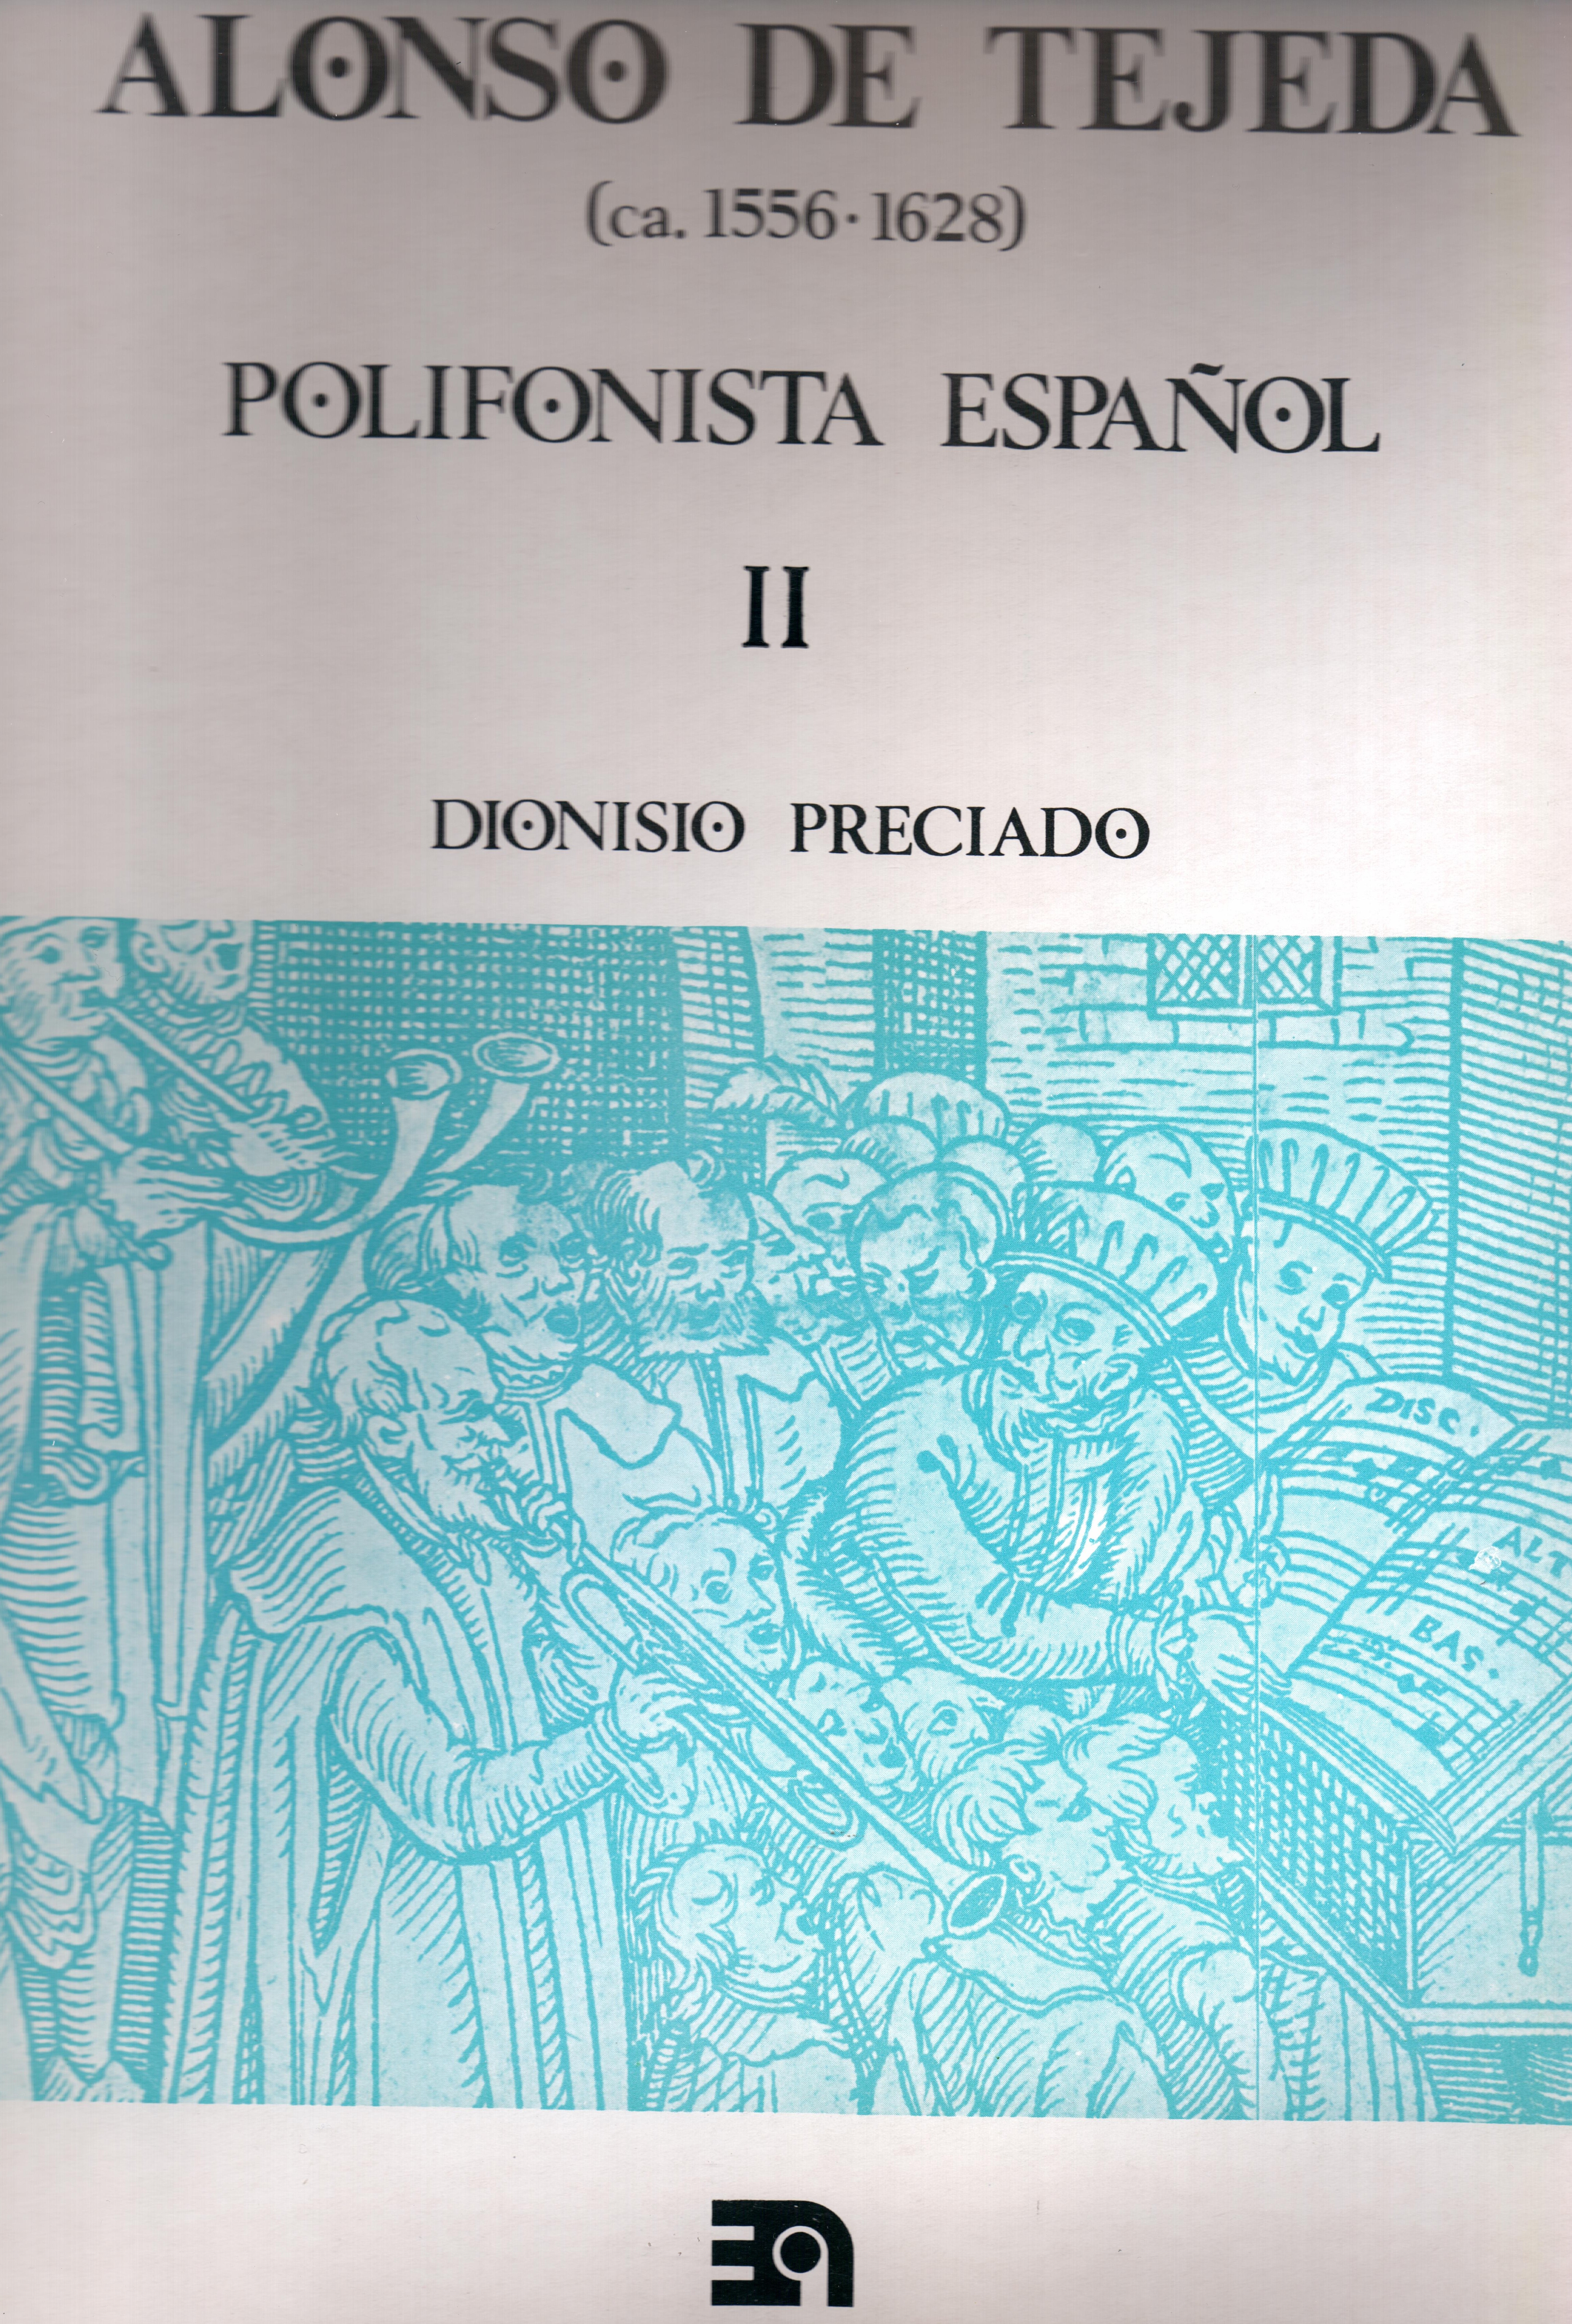 Alonso de Tejeda, polifonista español. Vol. II
Obras completas